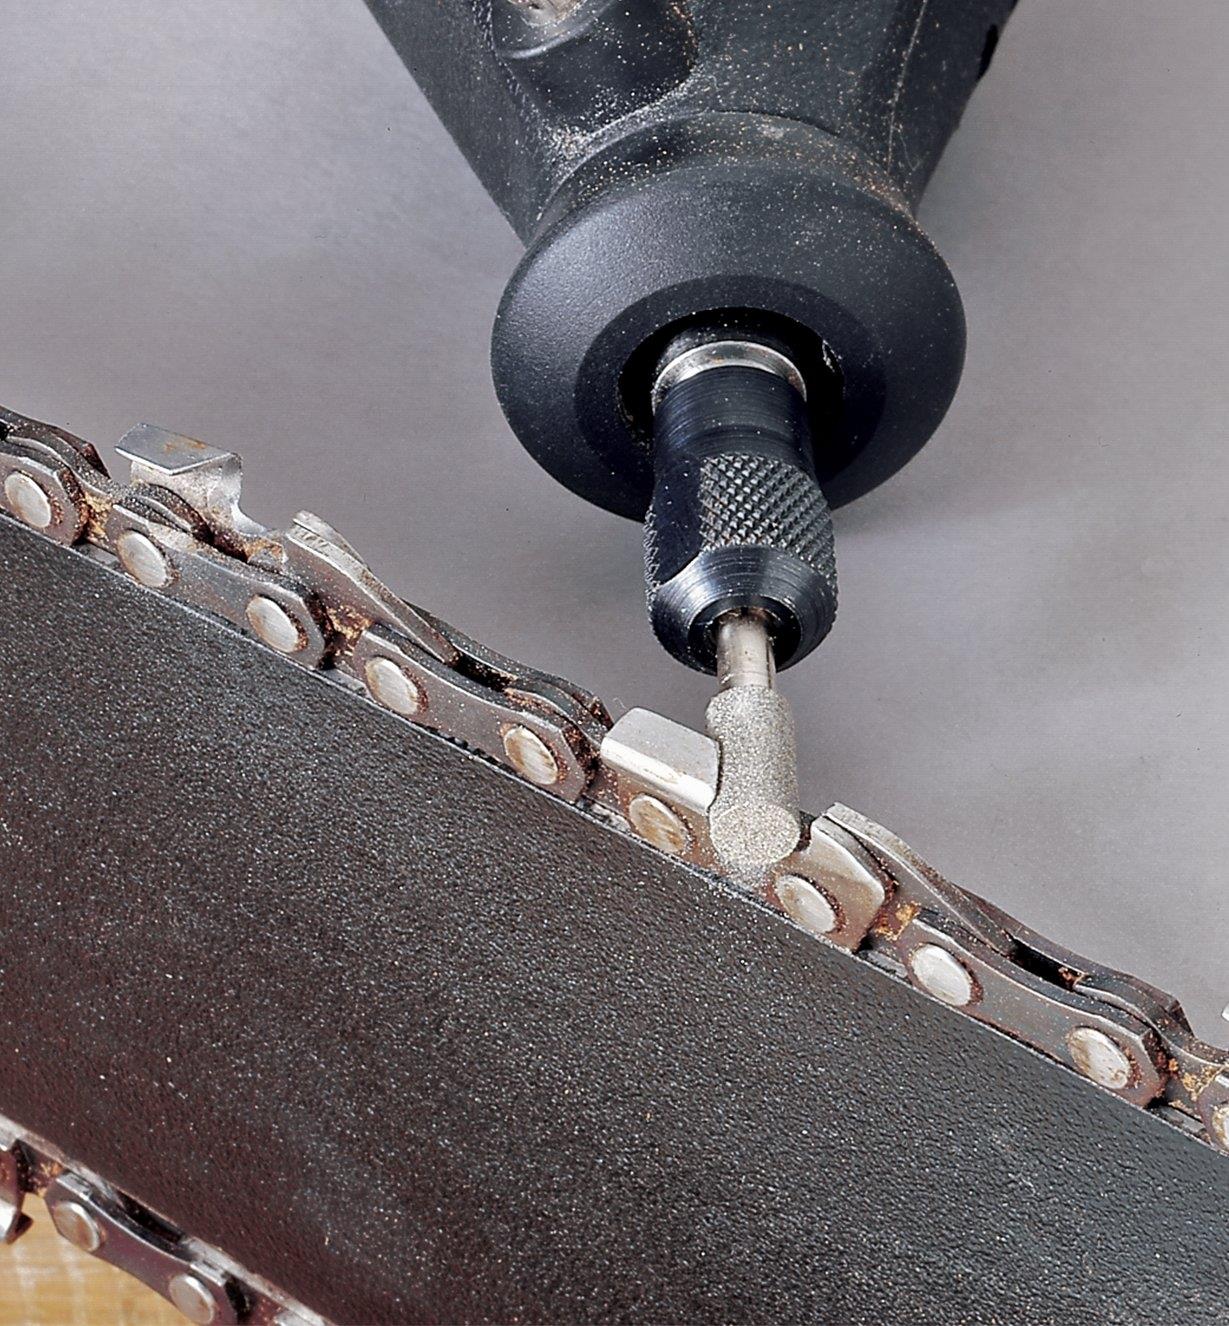 Using a chain-saw burr in a Dremel tool to sharpen chain-saw teeth